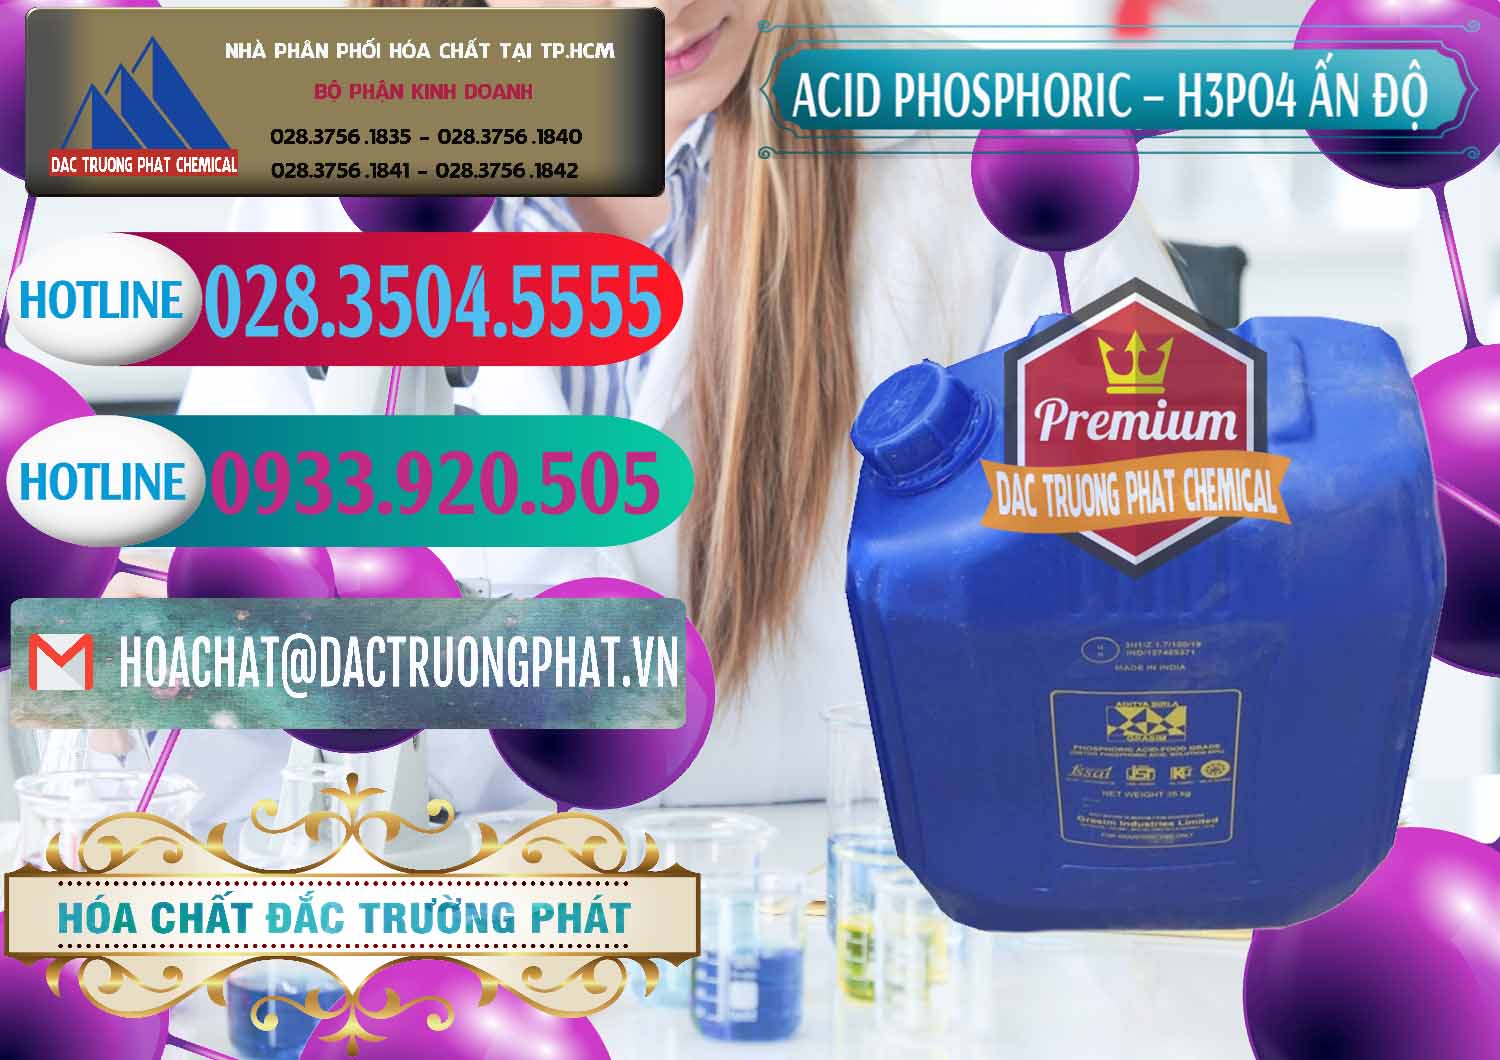 Cty chuyên bán & phân phối Axit Phosphoric H3PO4 85% Ấn Độ - 0350 - Cty chuyên cung cấp _ kinh doanh hóa chất tại TP.HCM - truongphat.vn